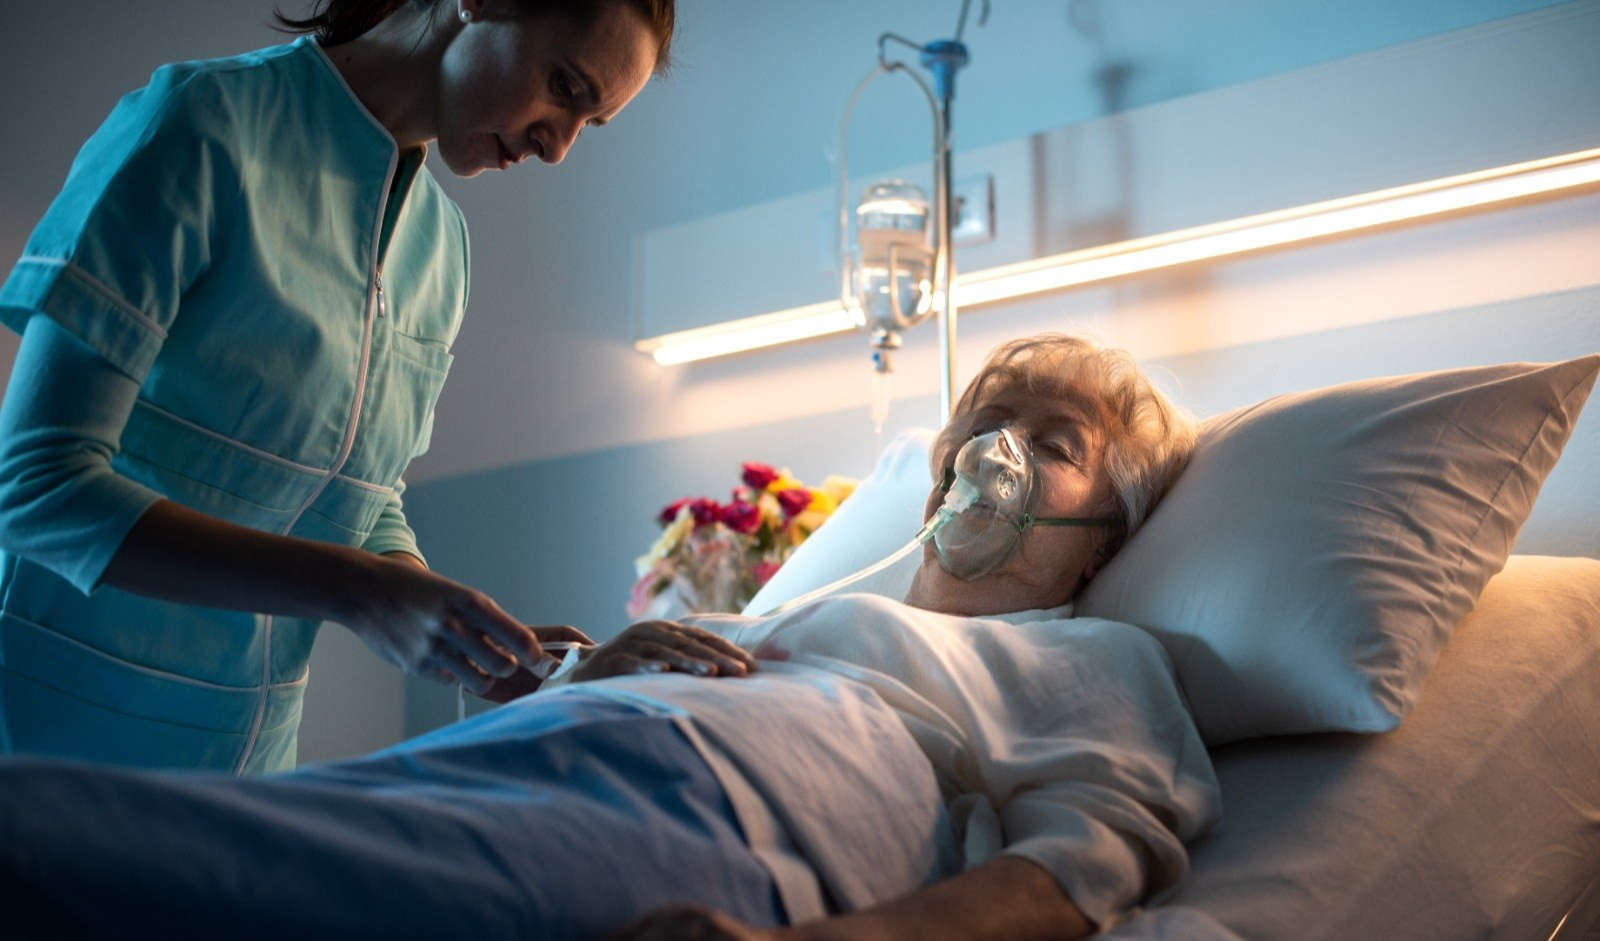 Muore di polmonite dopo inserimento sondino: indagati due medici e un infermiere